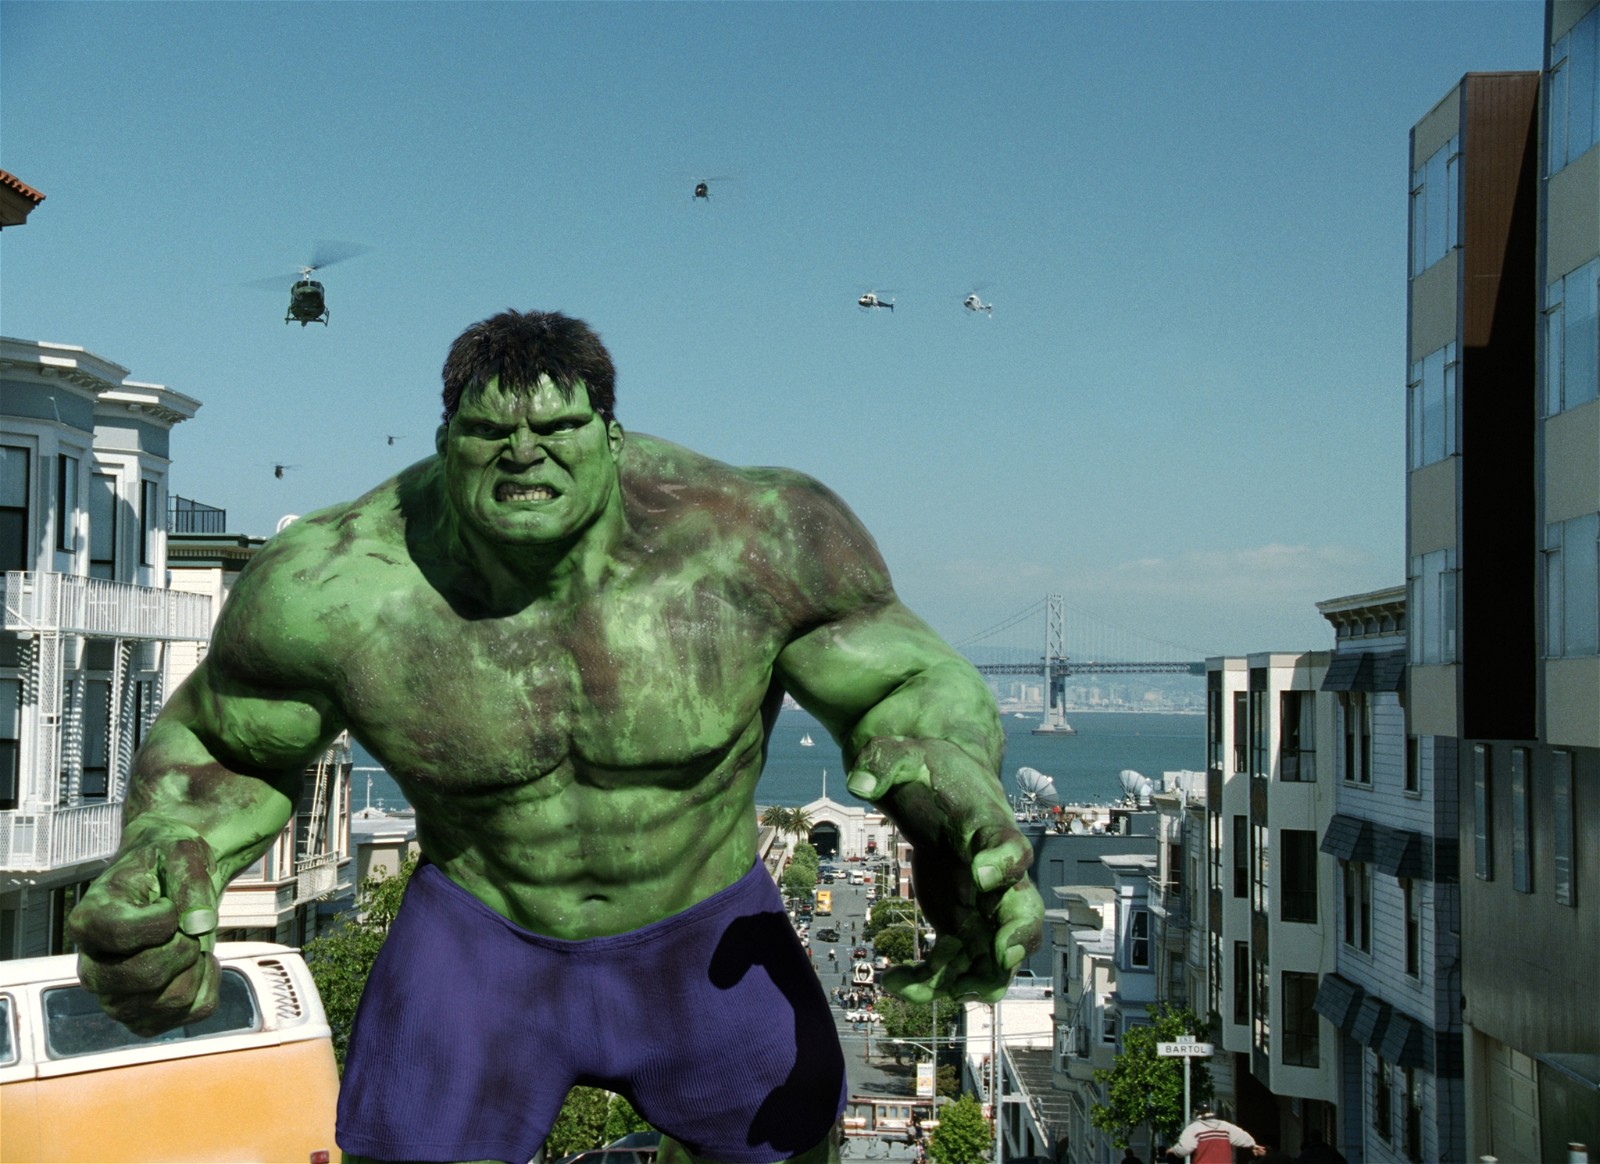 A still from Hulk